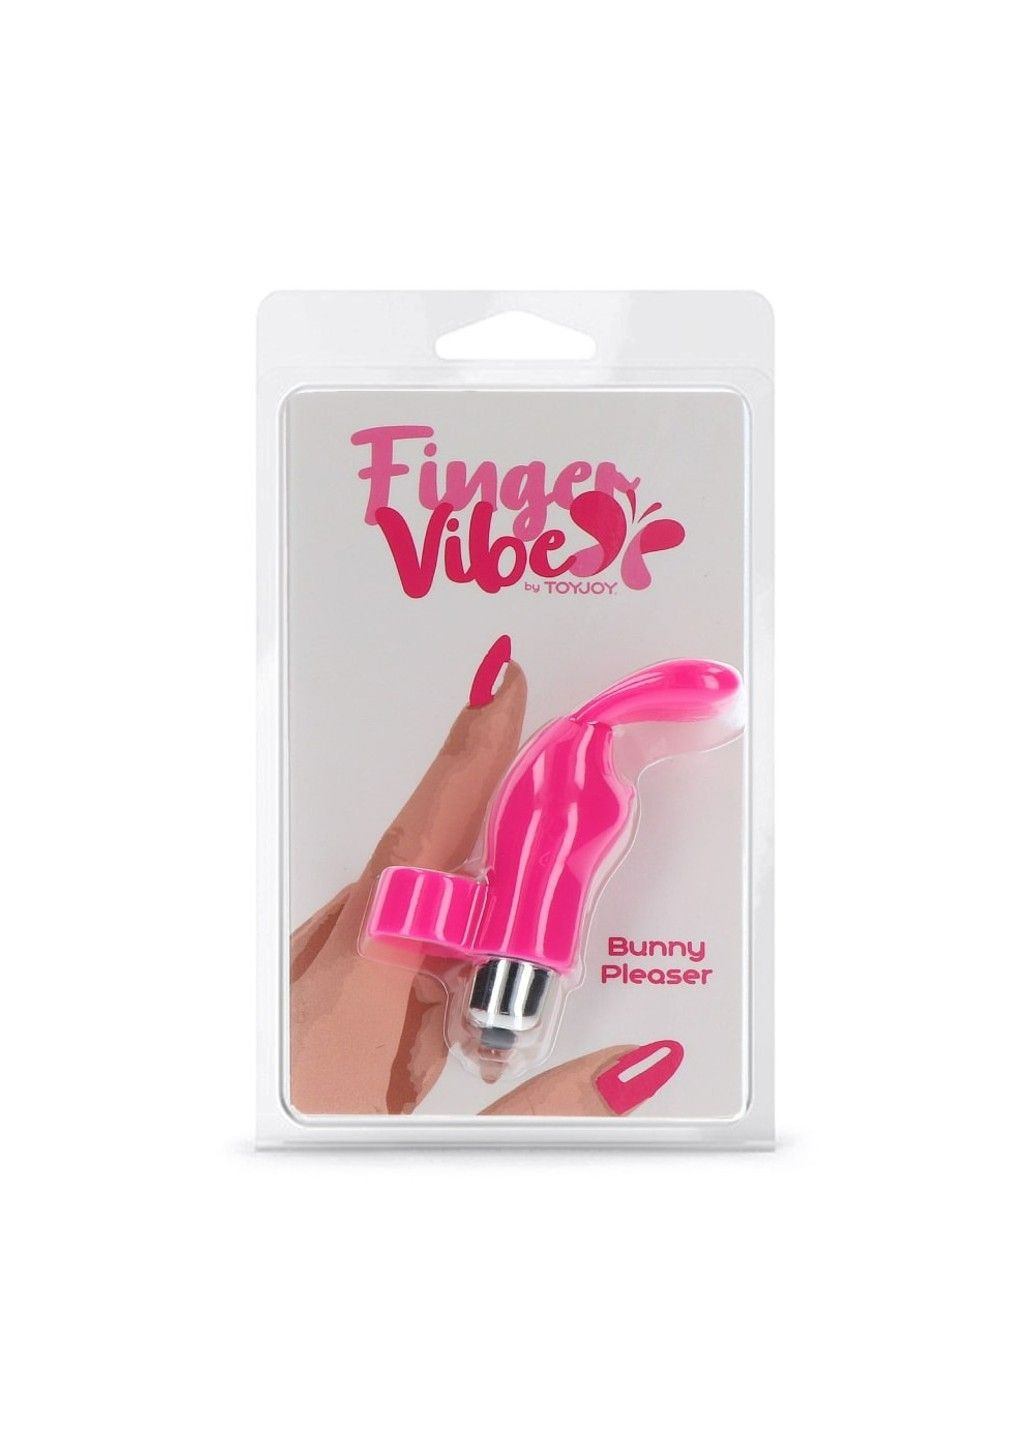 Вибратор на палец с кроликом розовый, 10 х 2.6 см Toy Joy (289783469)